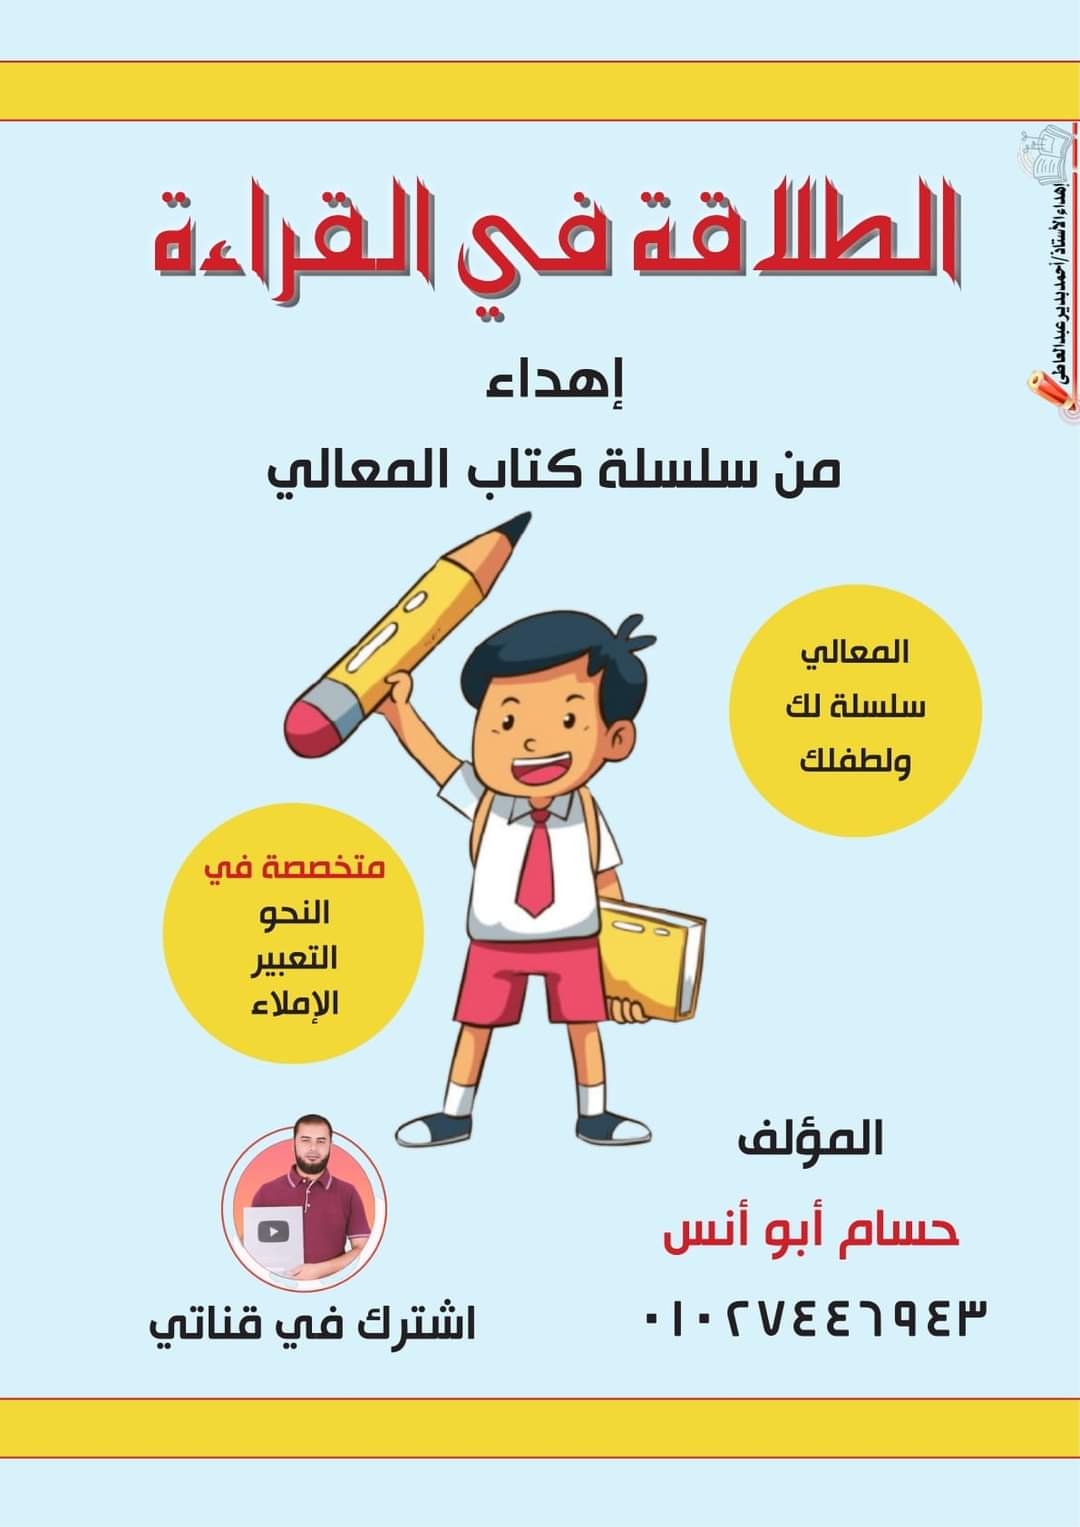 مذكرة تحليل ودمج قواعد وكتابة اللغة العربية للصفوف الاولى